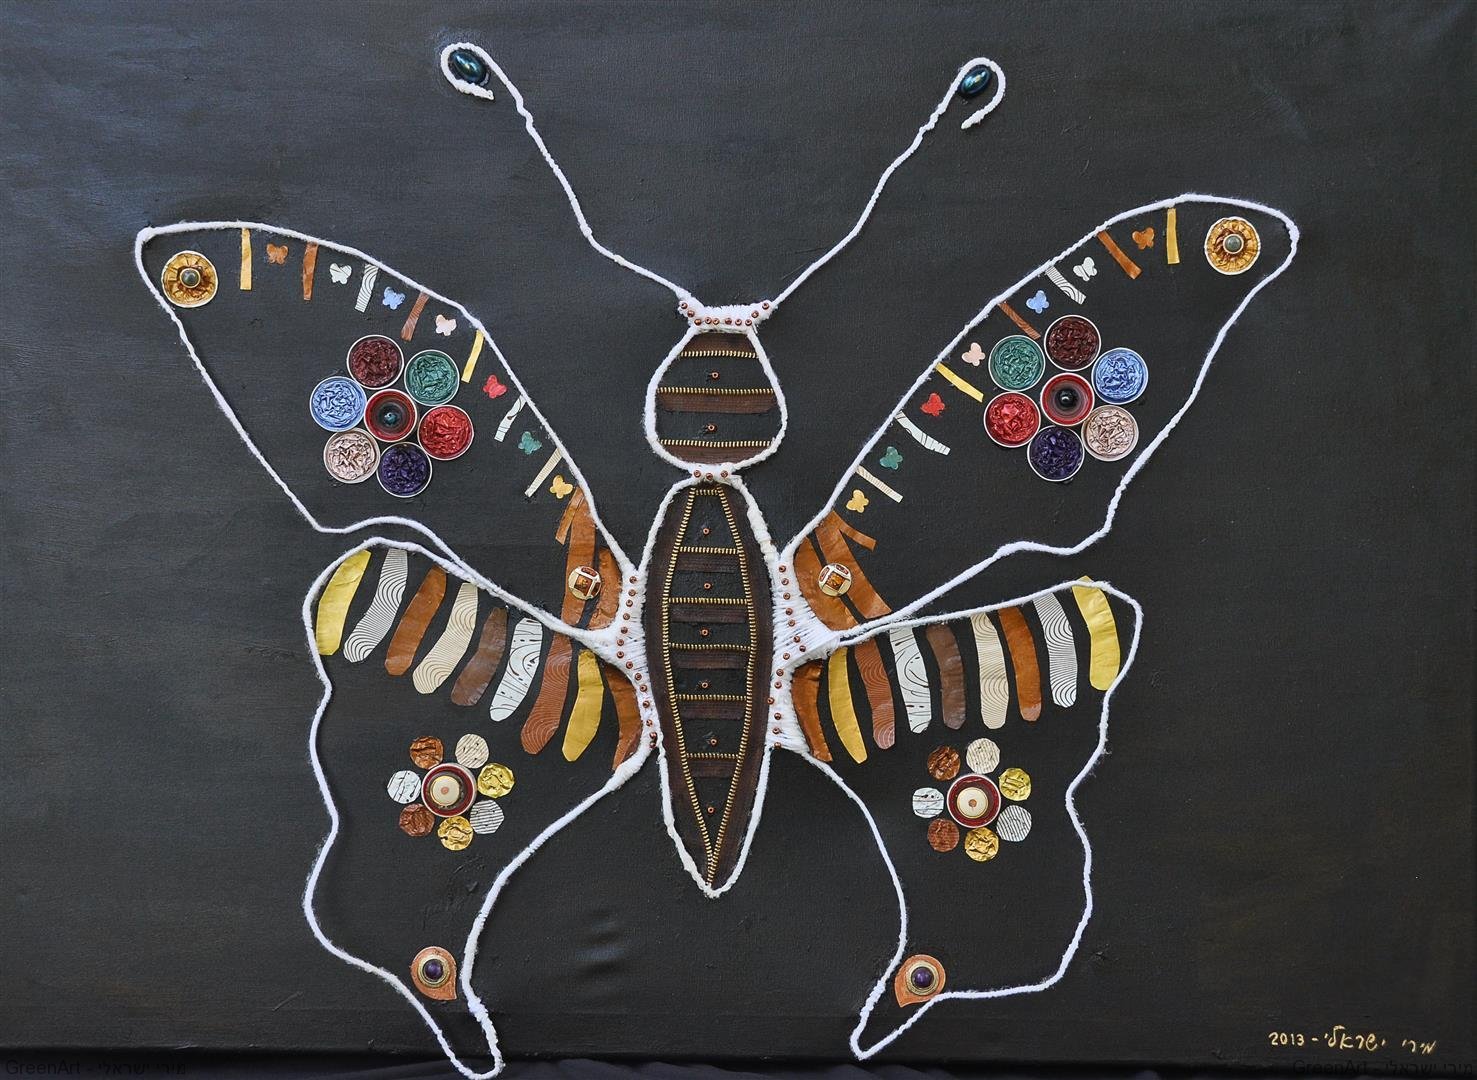 אסמבלאג' הפרפר הנעלם - אמנות אקולוגית כמסר לצורך בשמירת מגוון בעלי החיים בטבע. ECO ART